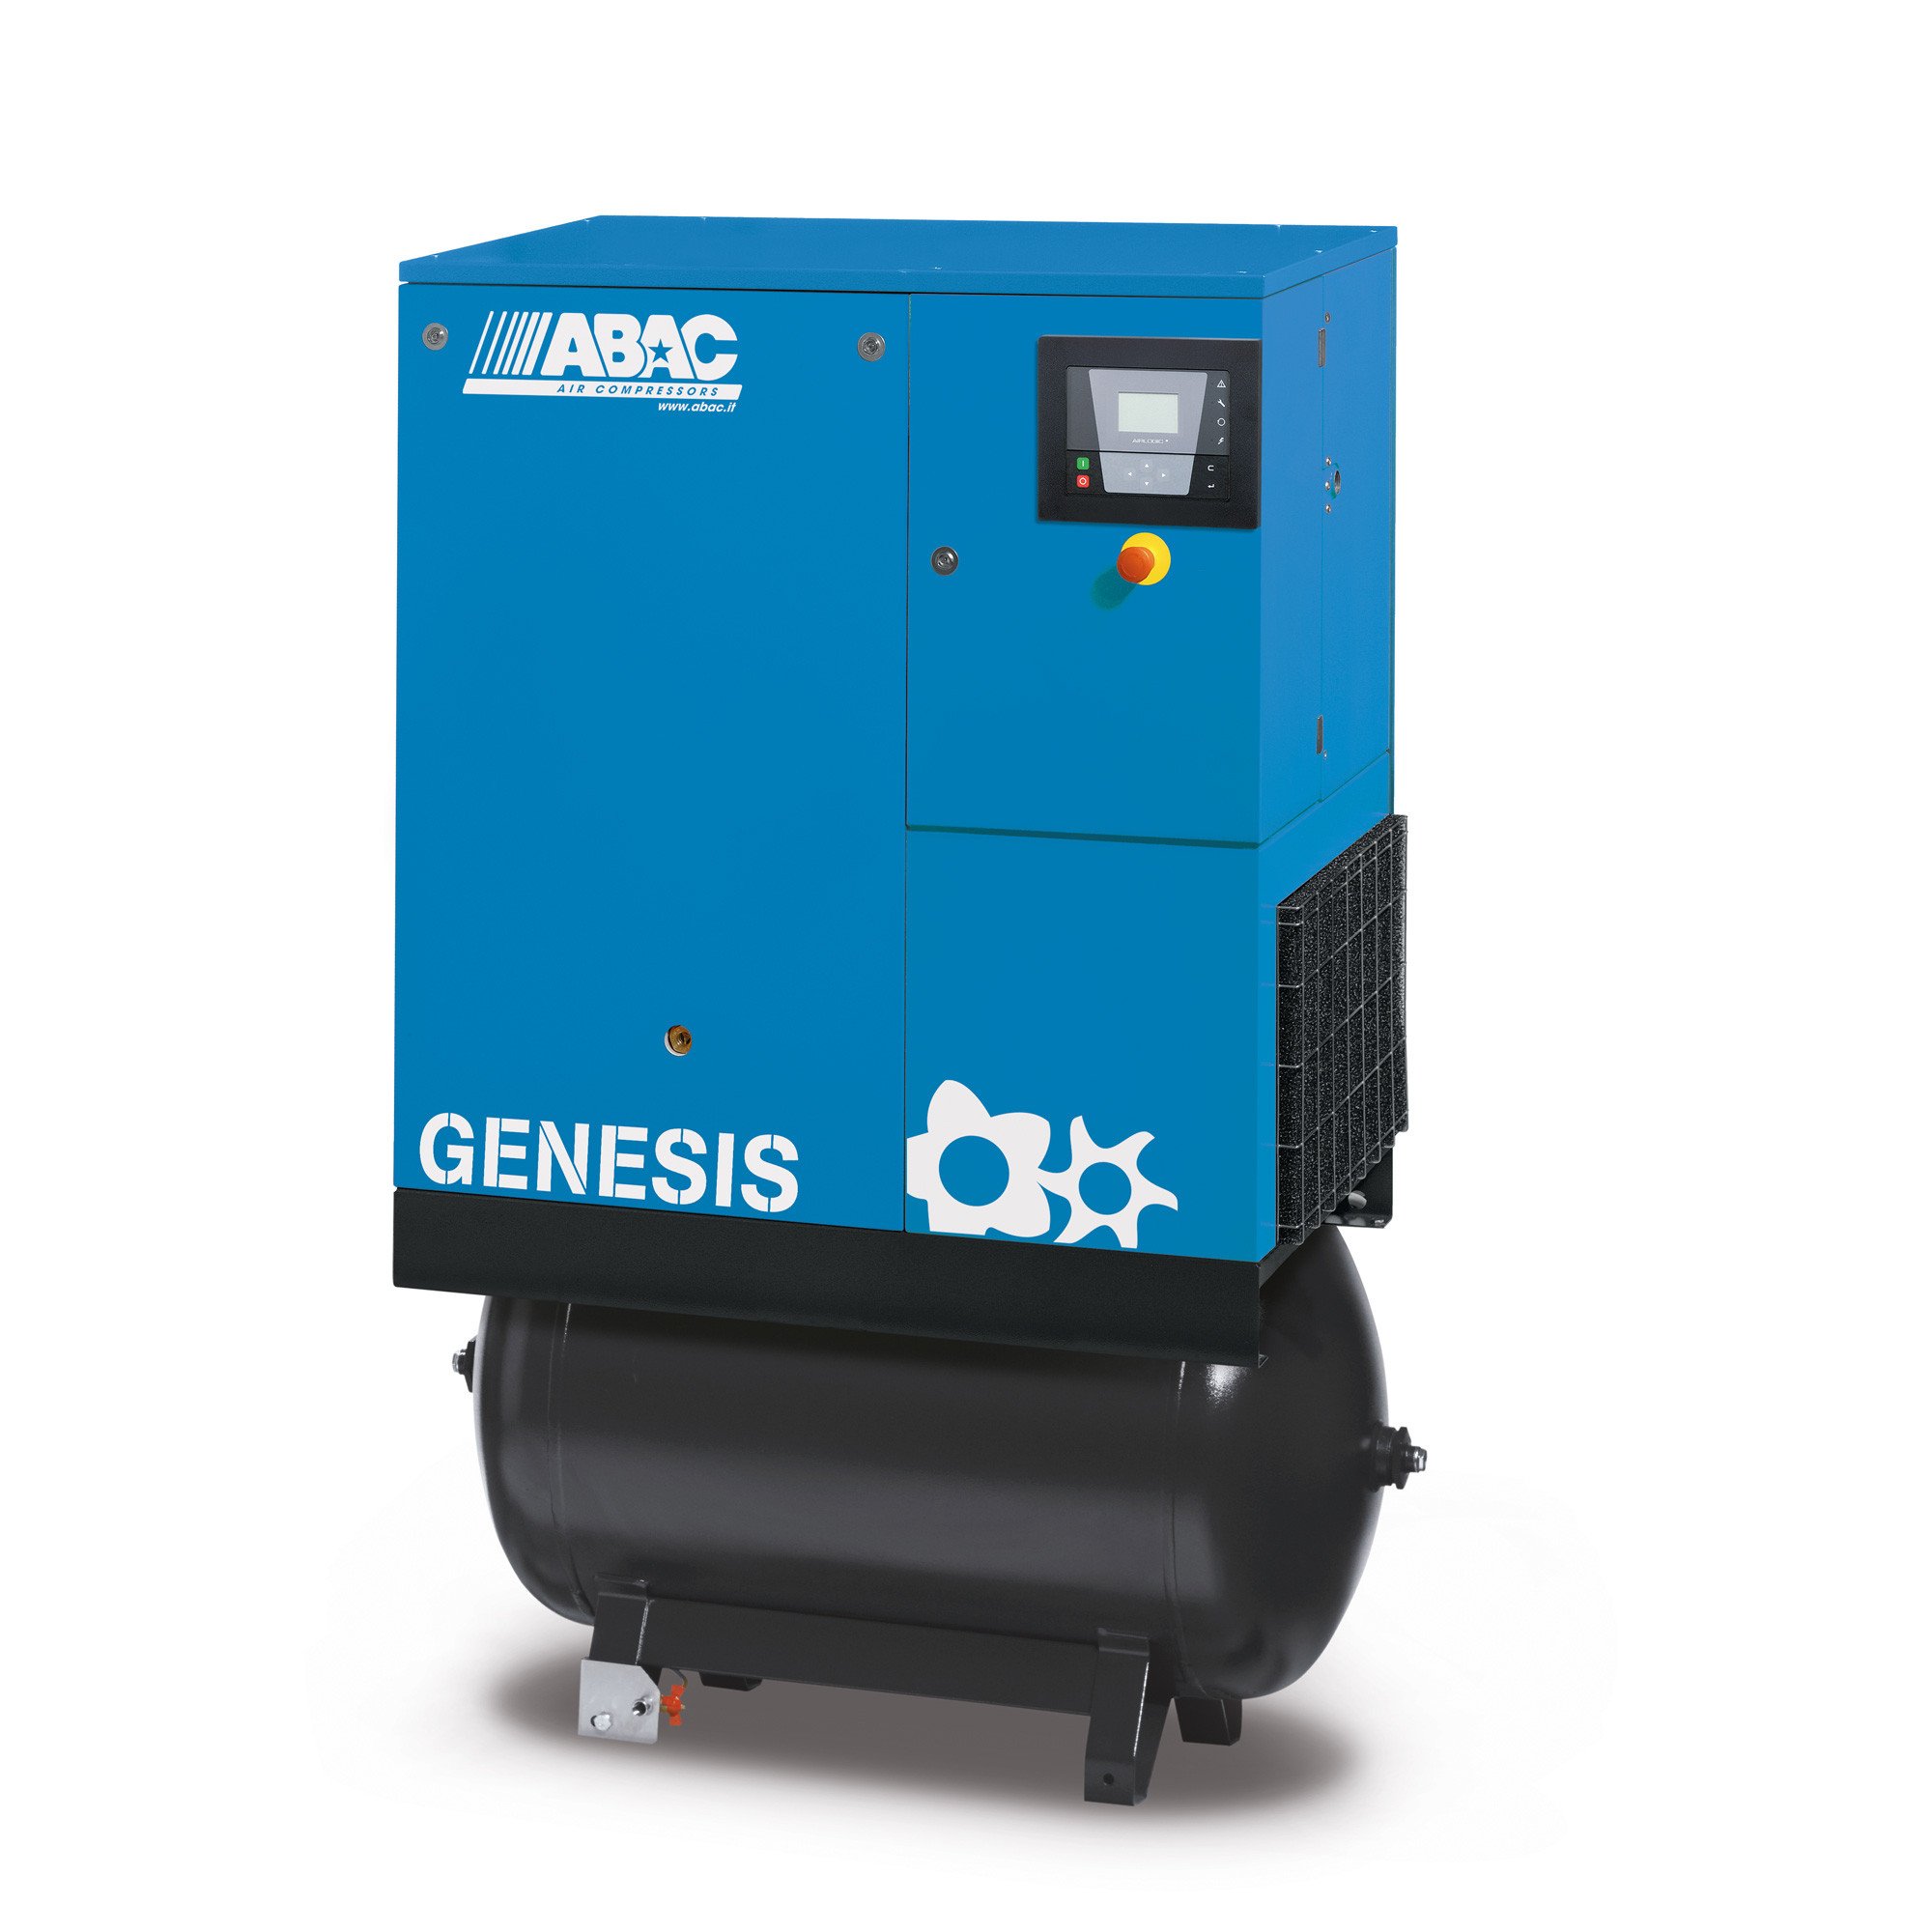 Abac Genesis 270L 7.5 kW固定速螺钉空气压缩机